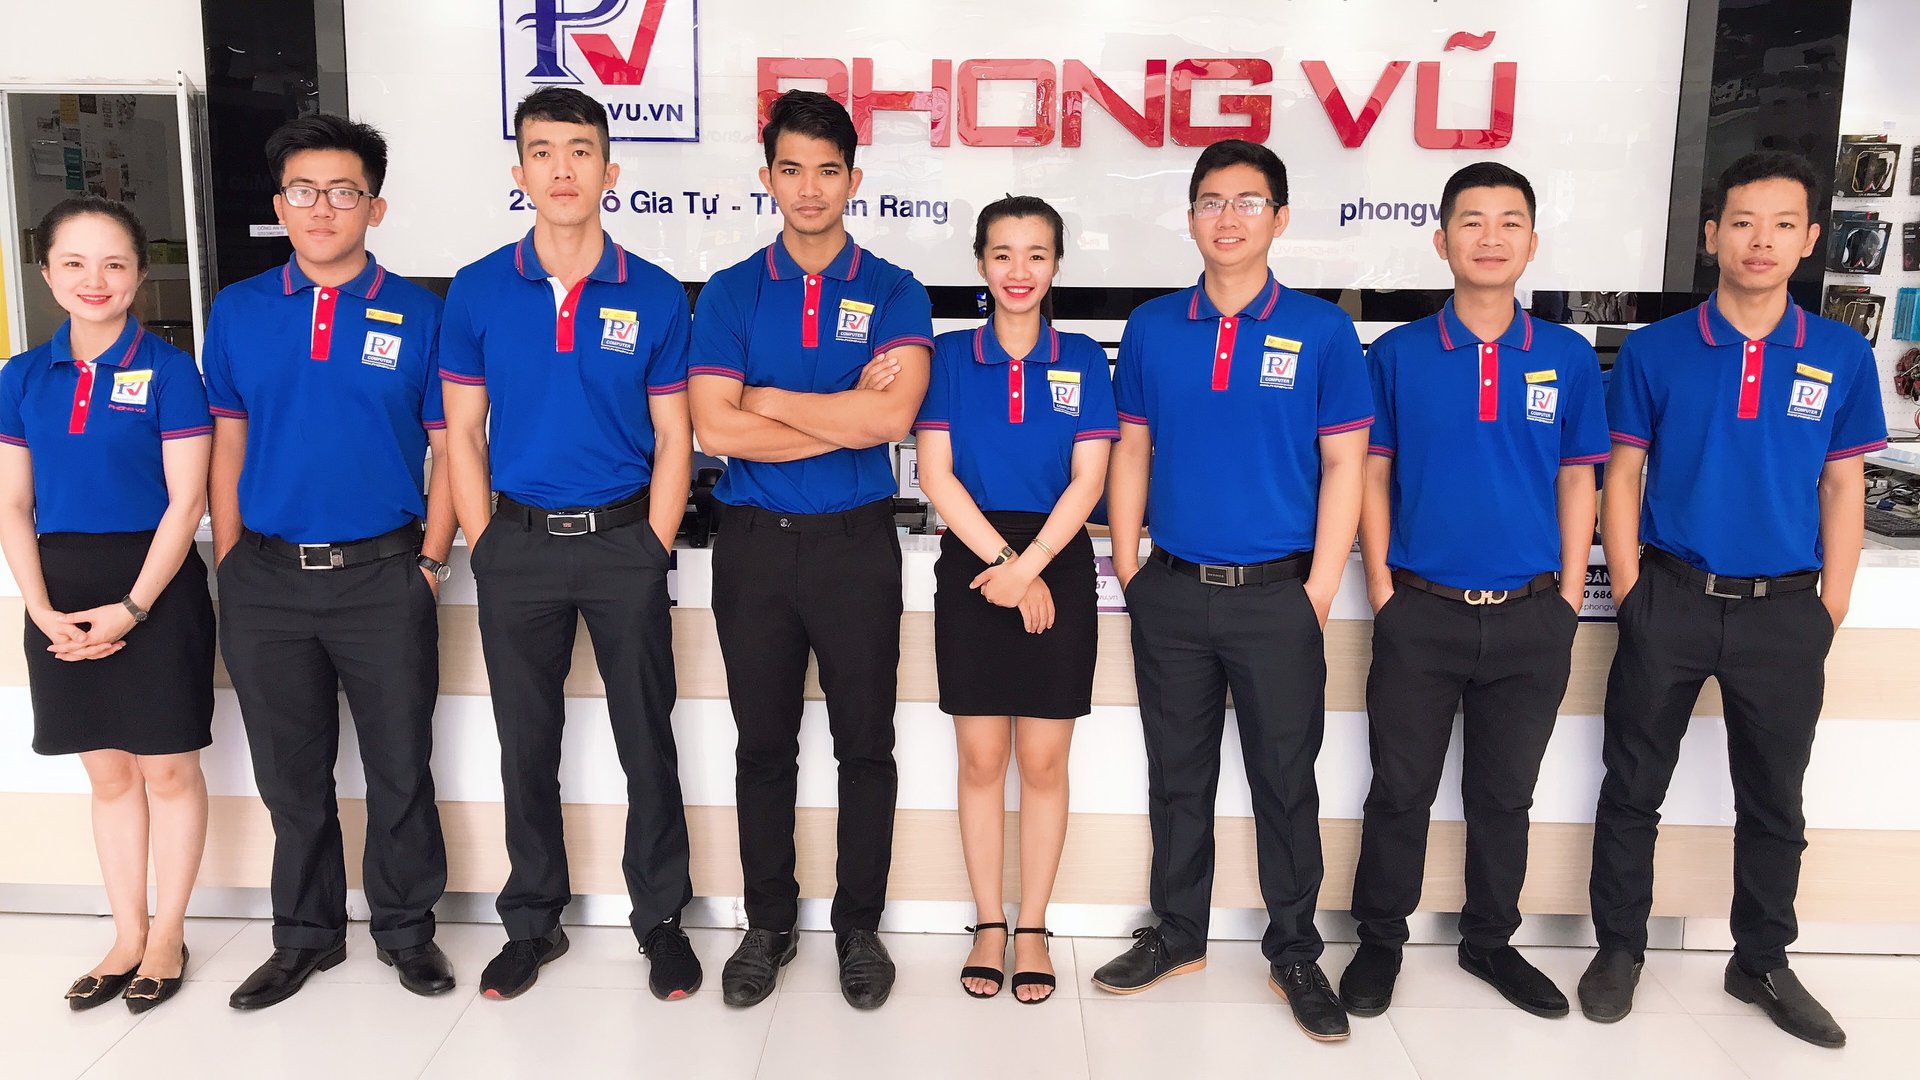 Phong Vũ cam kết đồng hành cùng sinh viên thanh niên Đà Nẵng